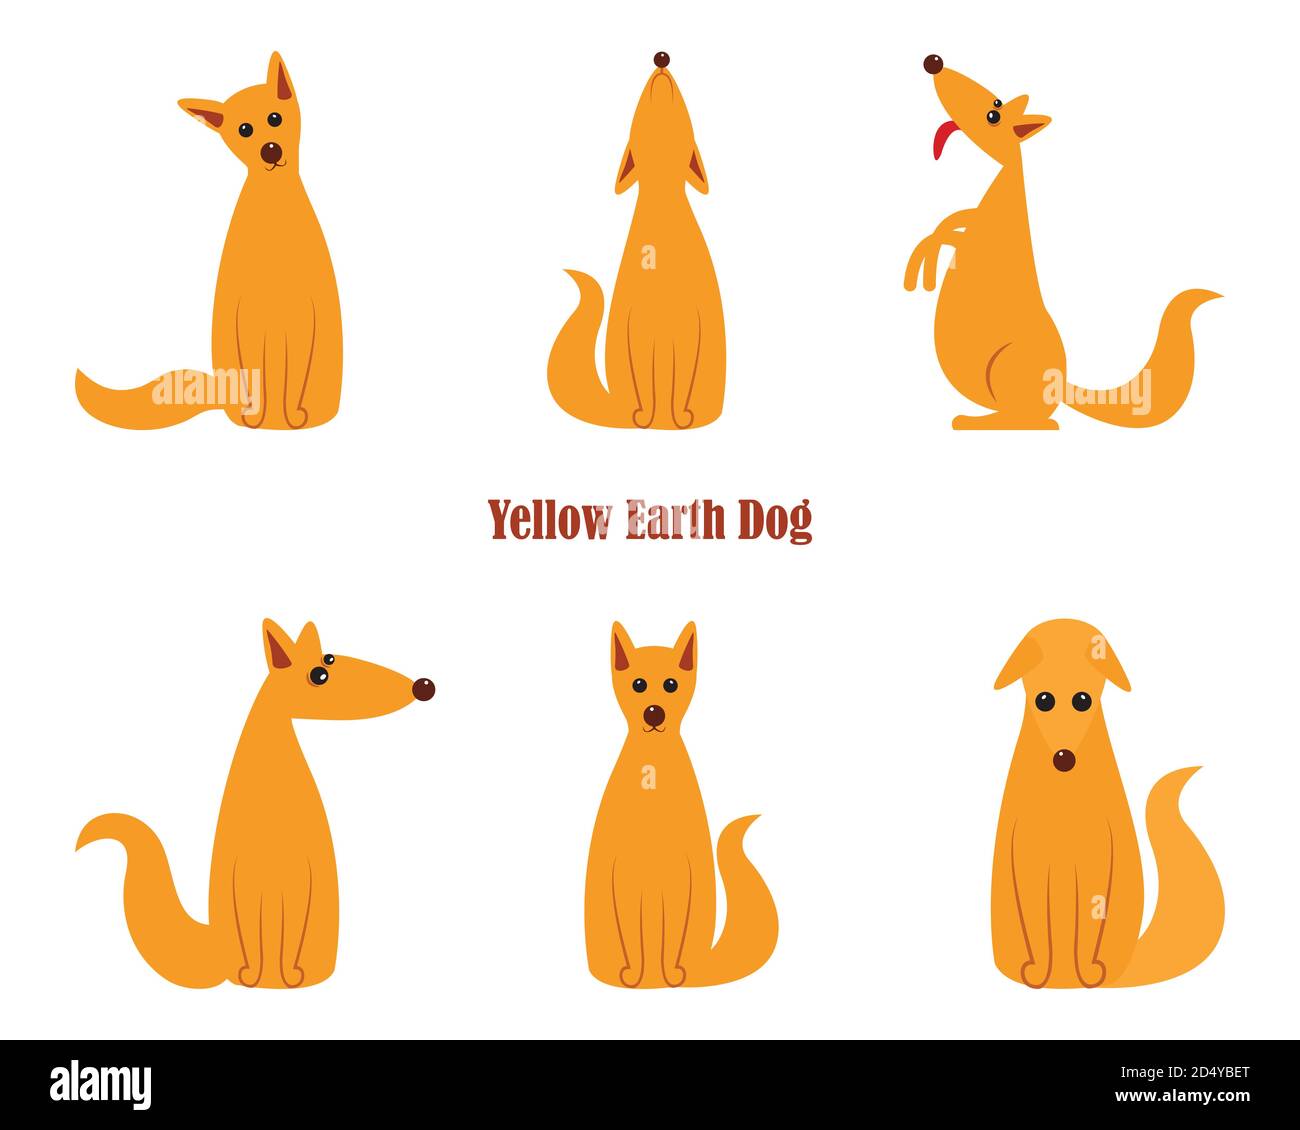 Hund ist Symbol des neuen Jahres 2018, nach dem chinesischen Kalender Jahr der Gelben Erde Hund. Wachhund Deutscher Schäferhund im Polygonen-Stil, auf der Hinterhand sitzend Stock Vektor